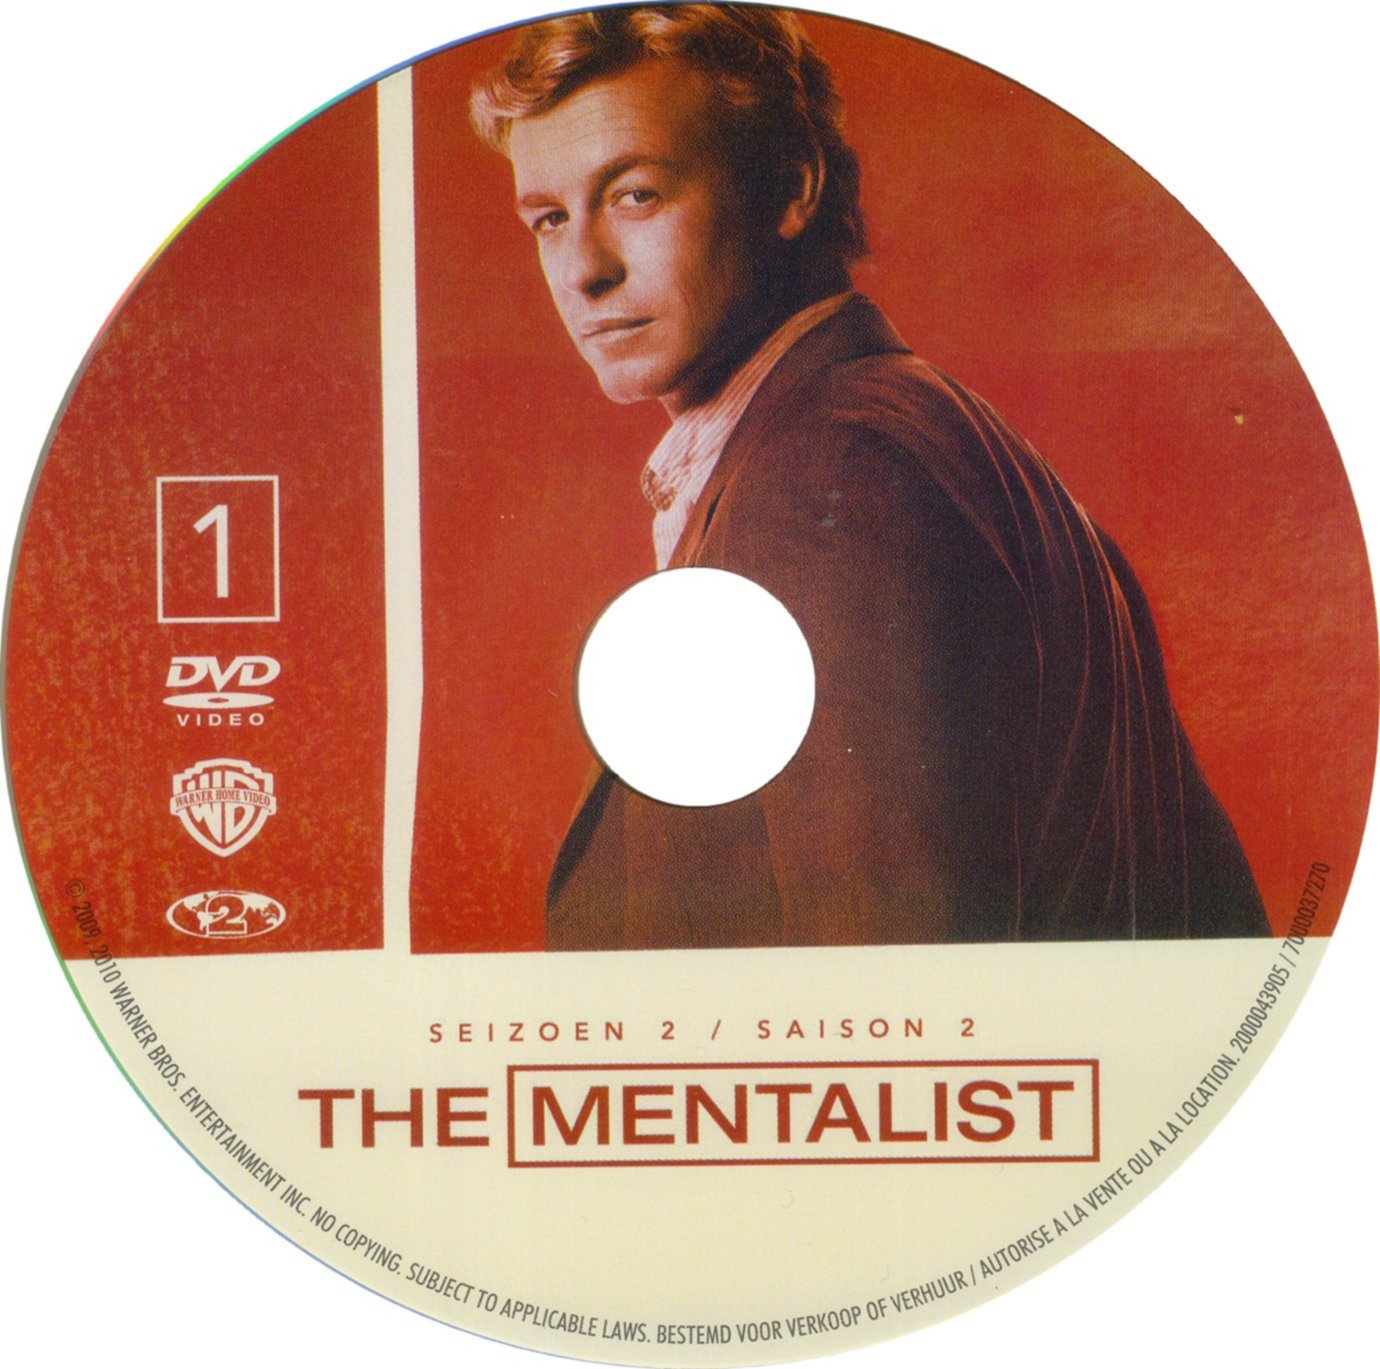 The mentalist Saison 2 DISC 1